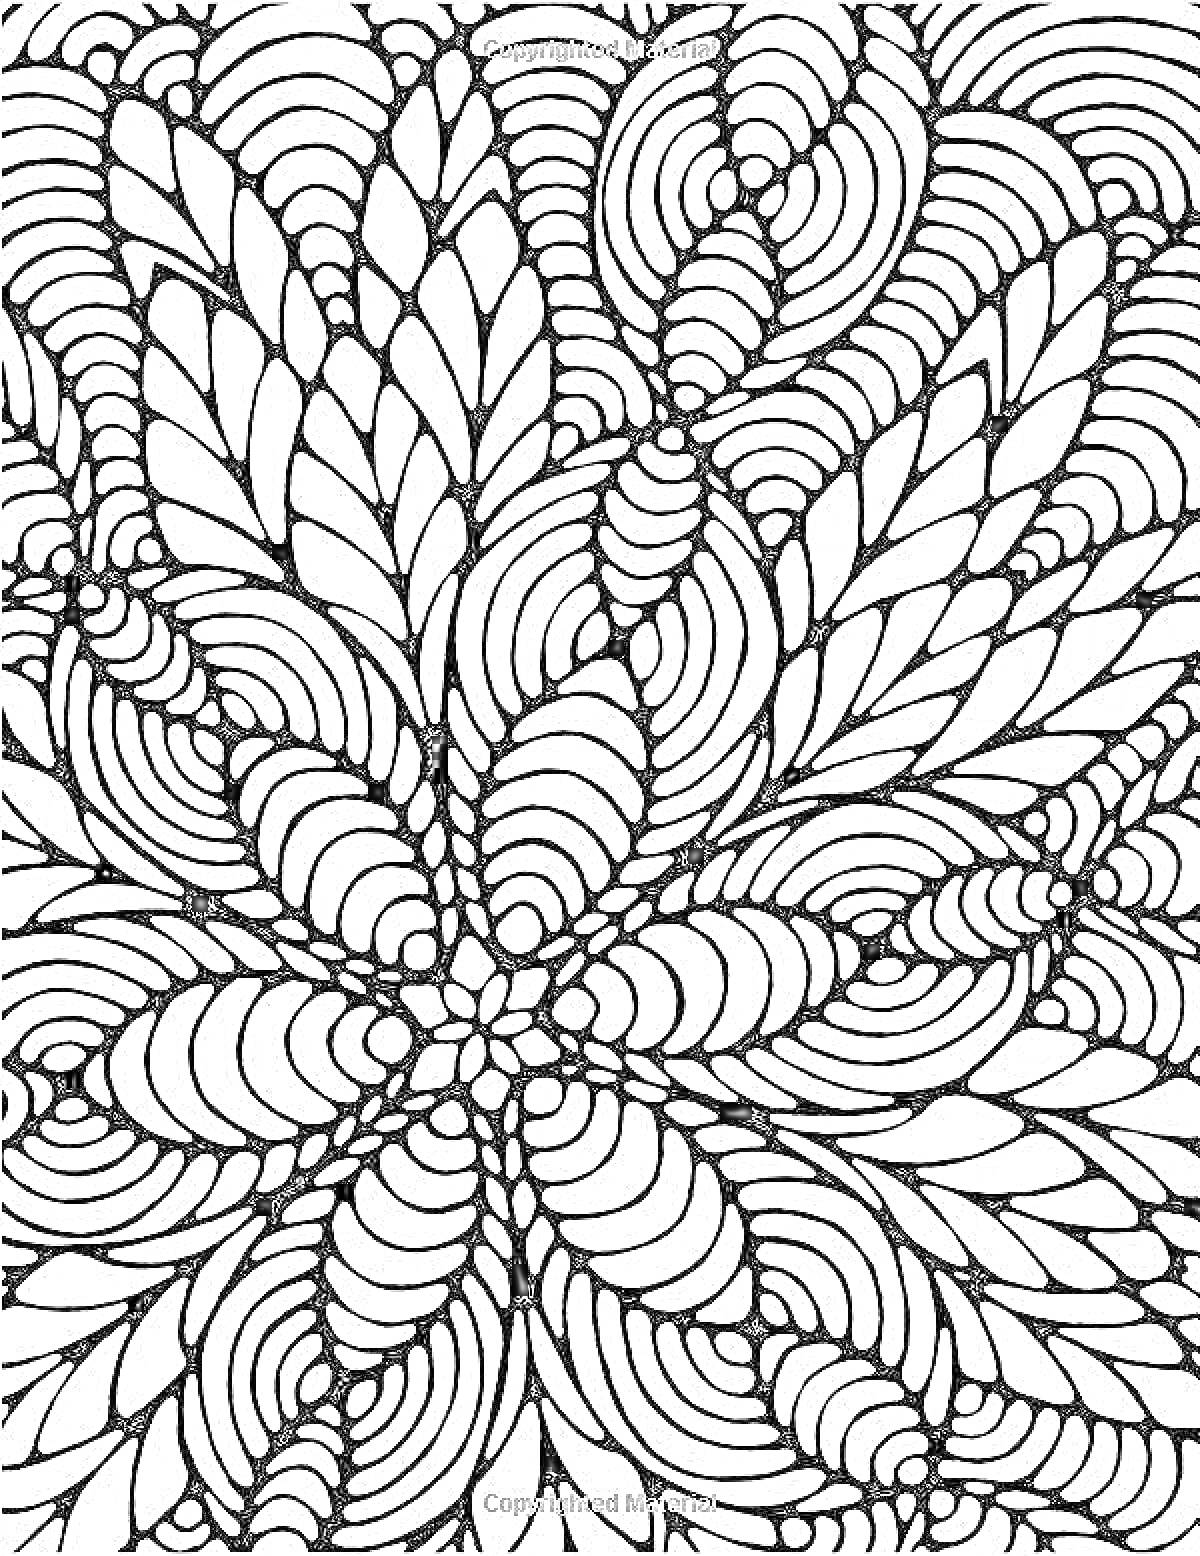 Раскраска Антистрессовая раскраска с абстрактным узором из листьев и завитков